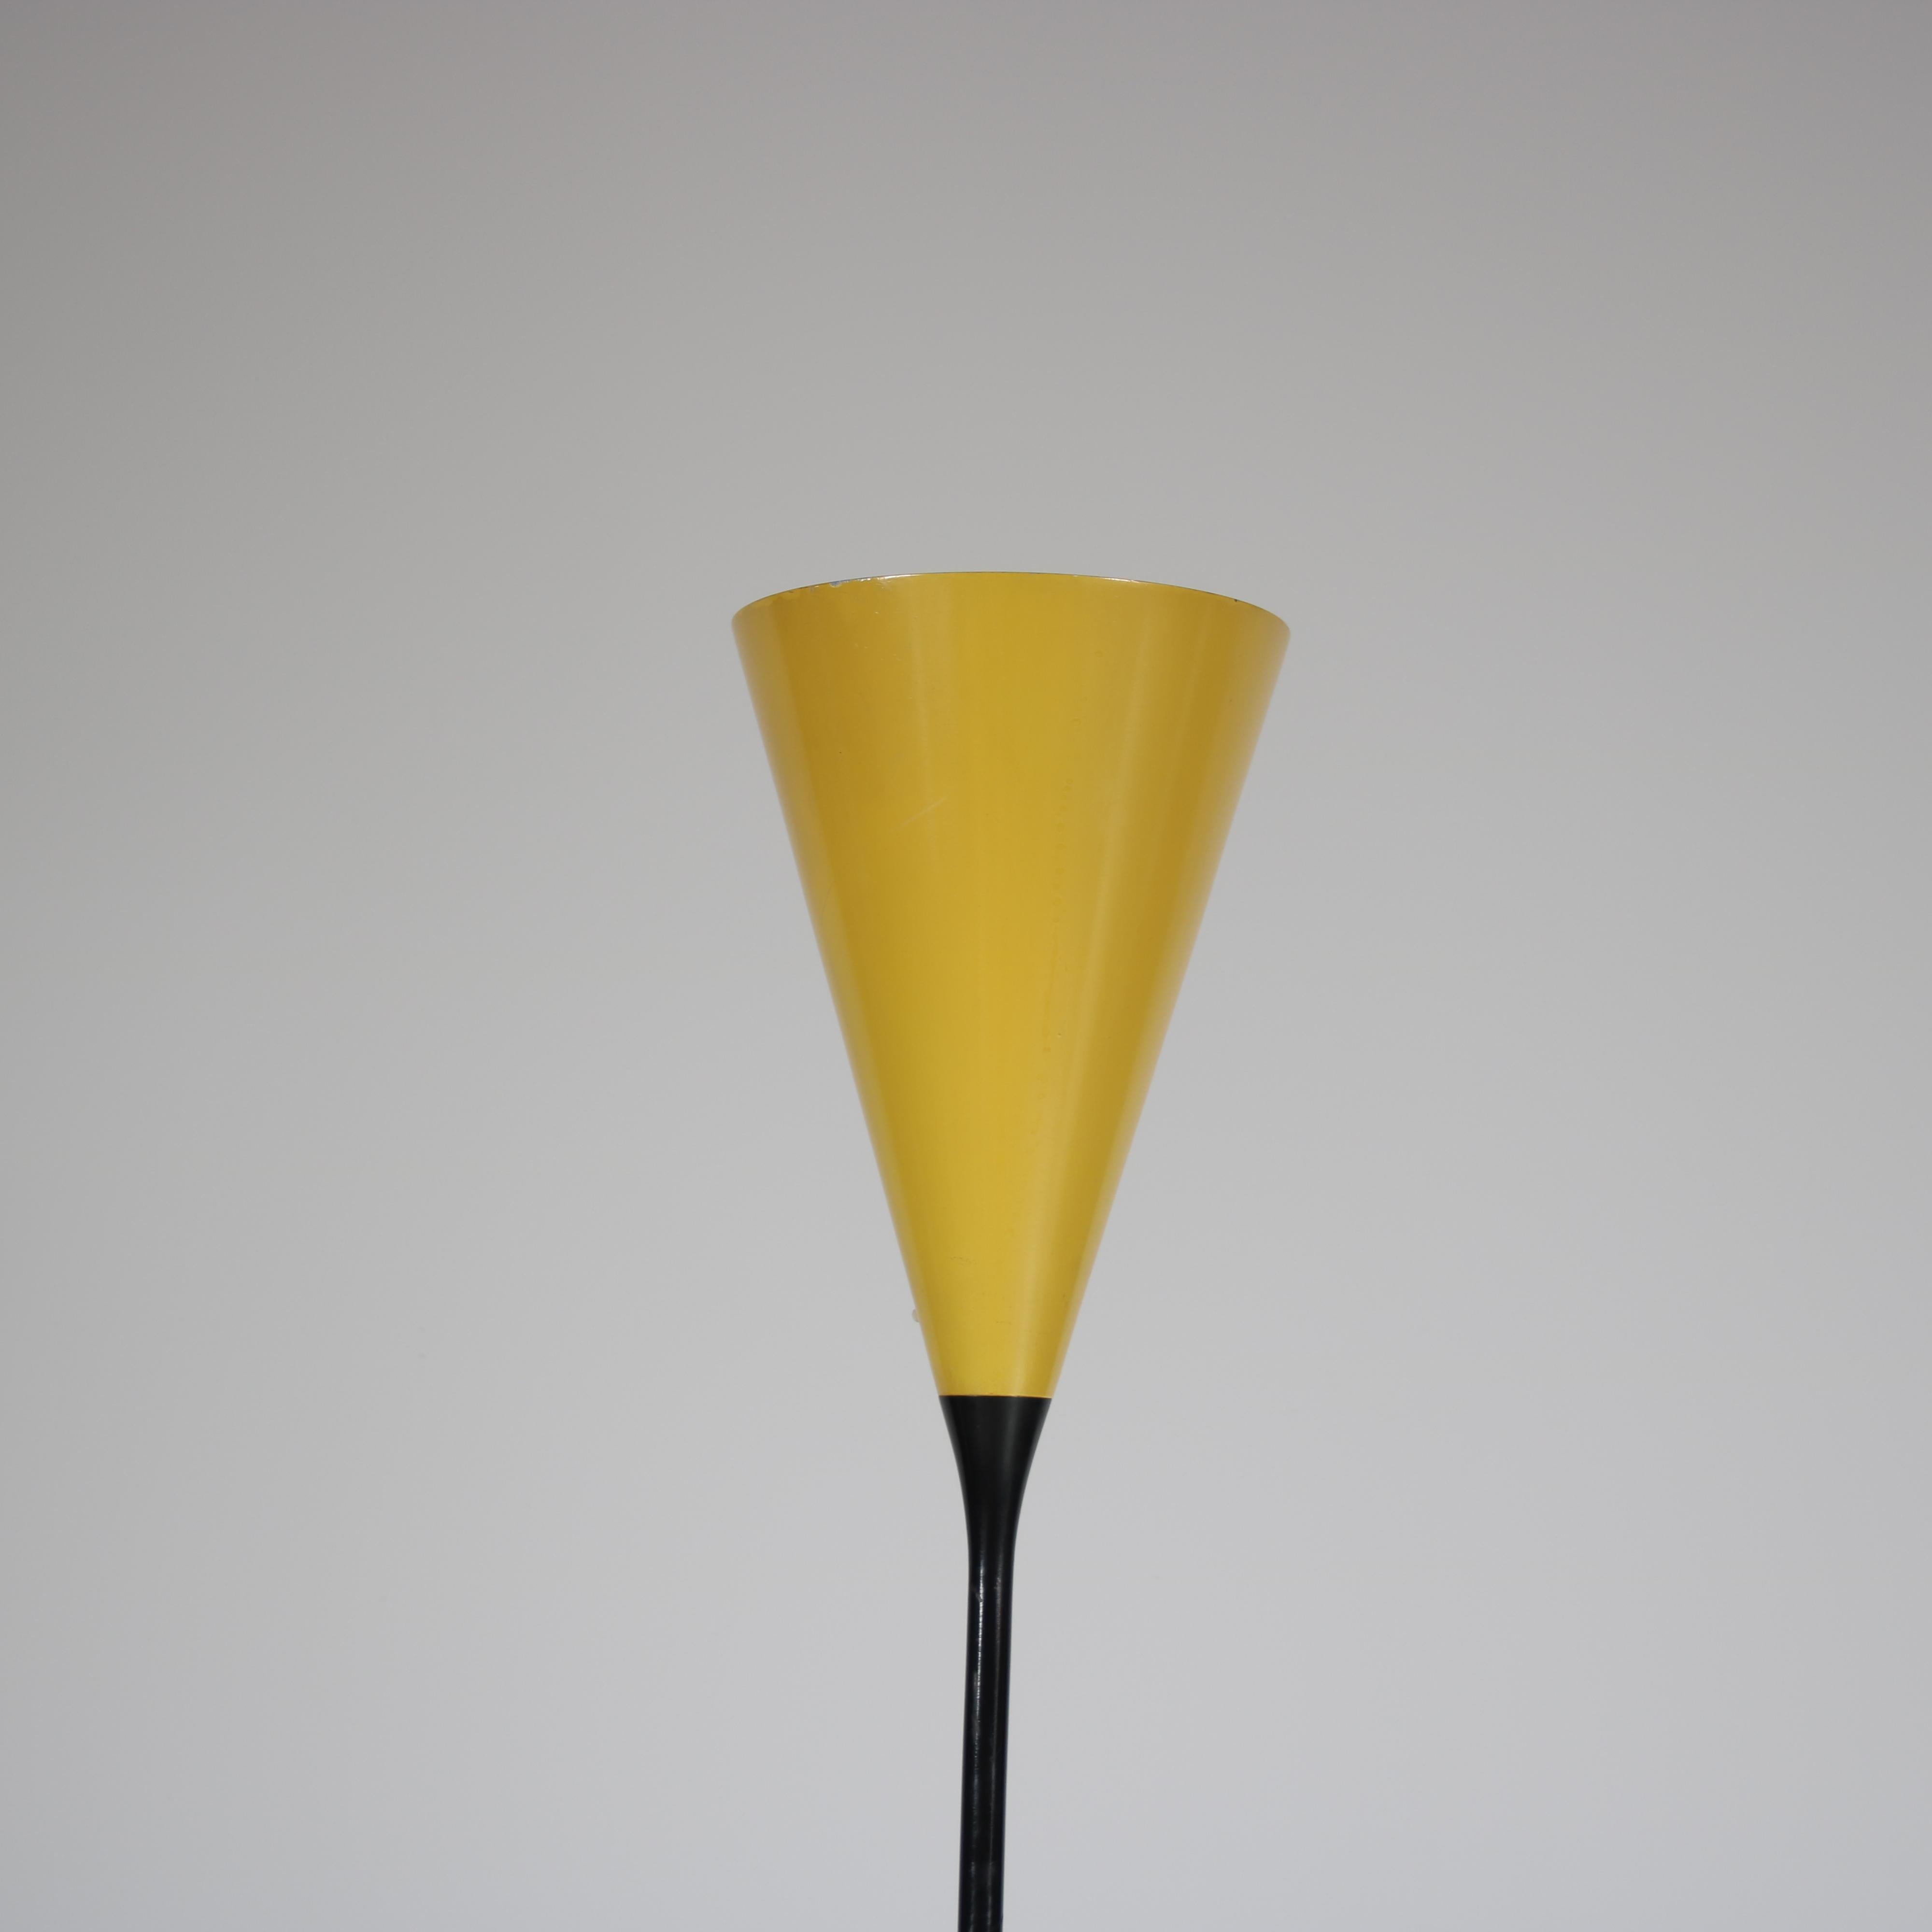 Italian Gino Sarfatti Floor Lamp for Arteluce, Italy 1950 For Sale